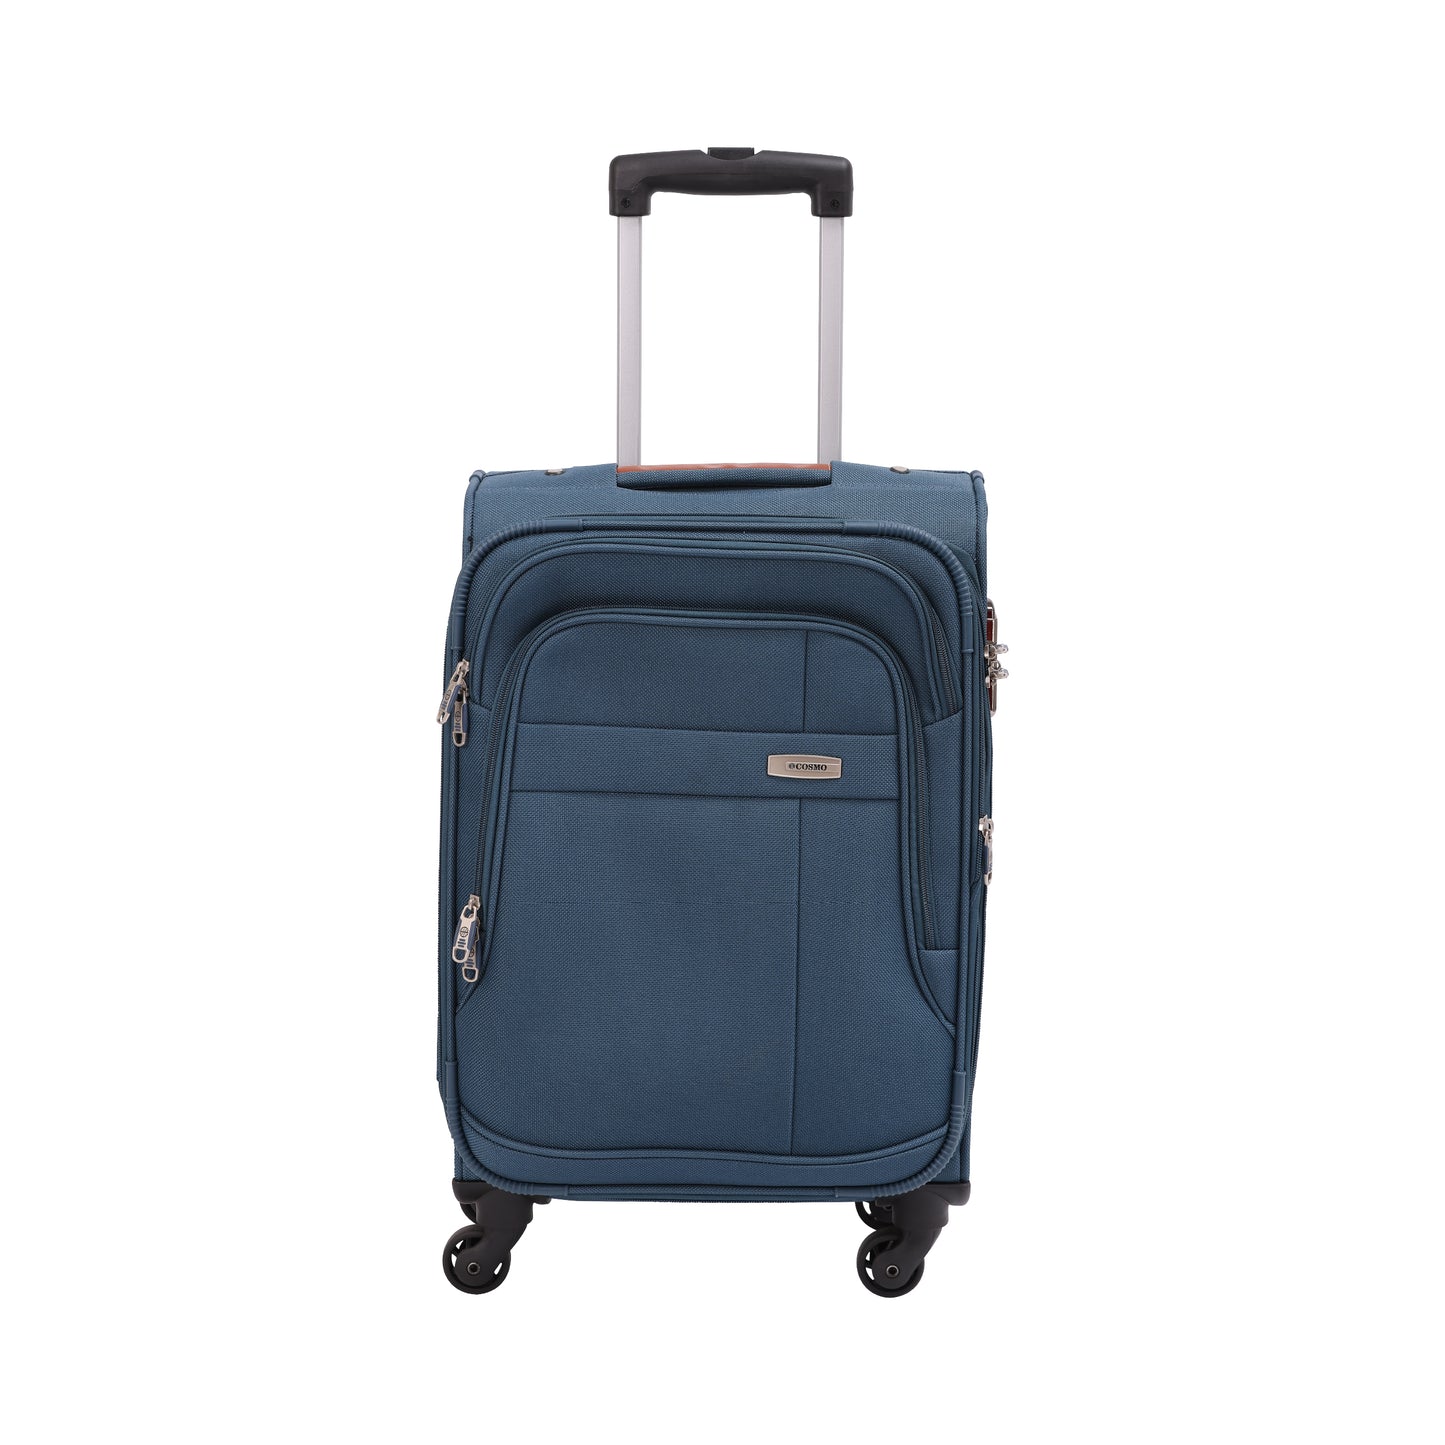 Cosmo Maxima 4W 80 cm Soft Luggage Trolley Case